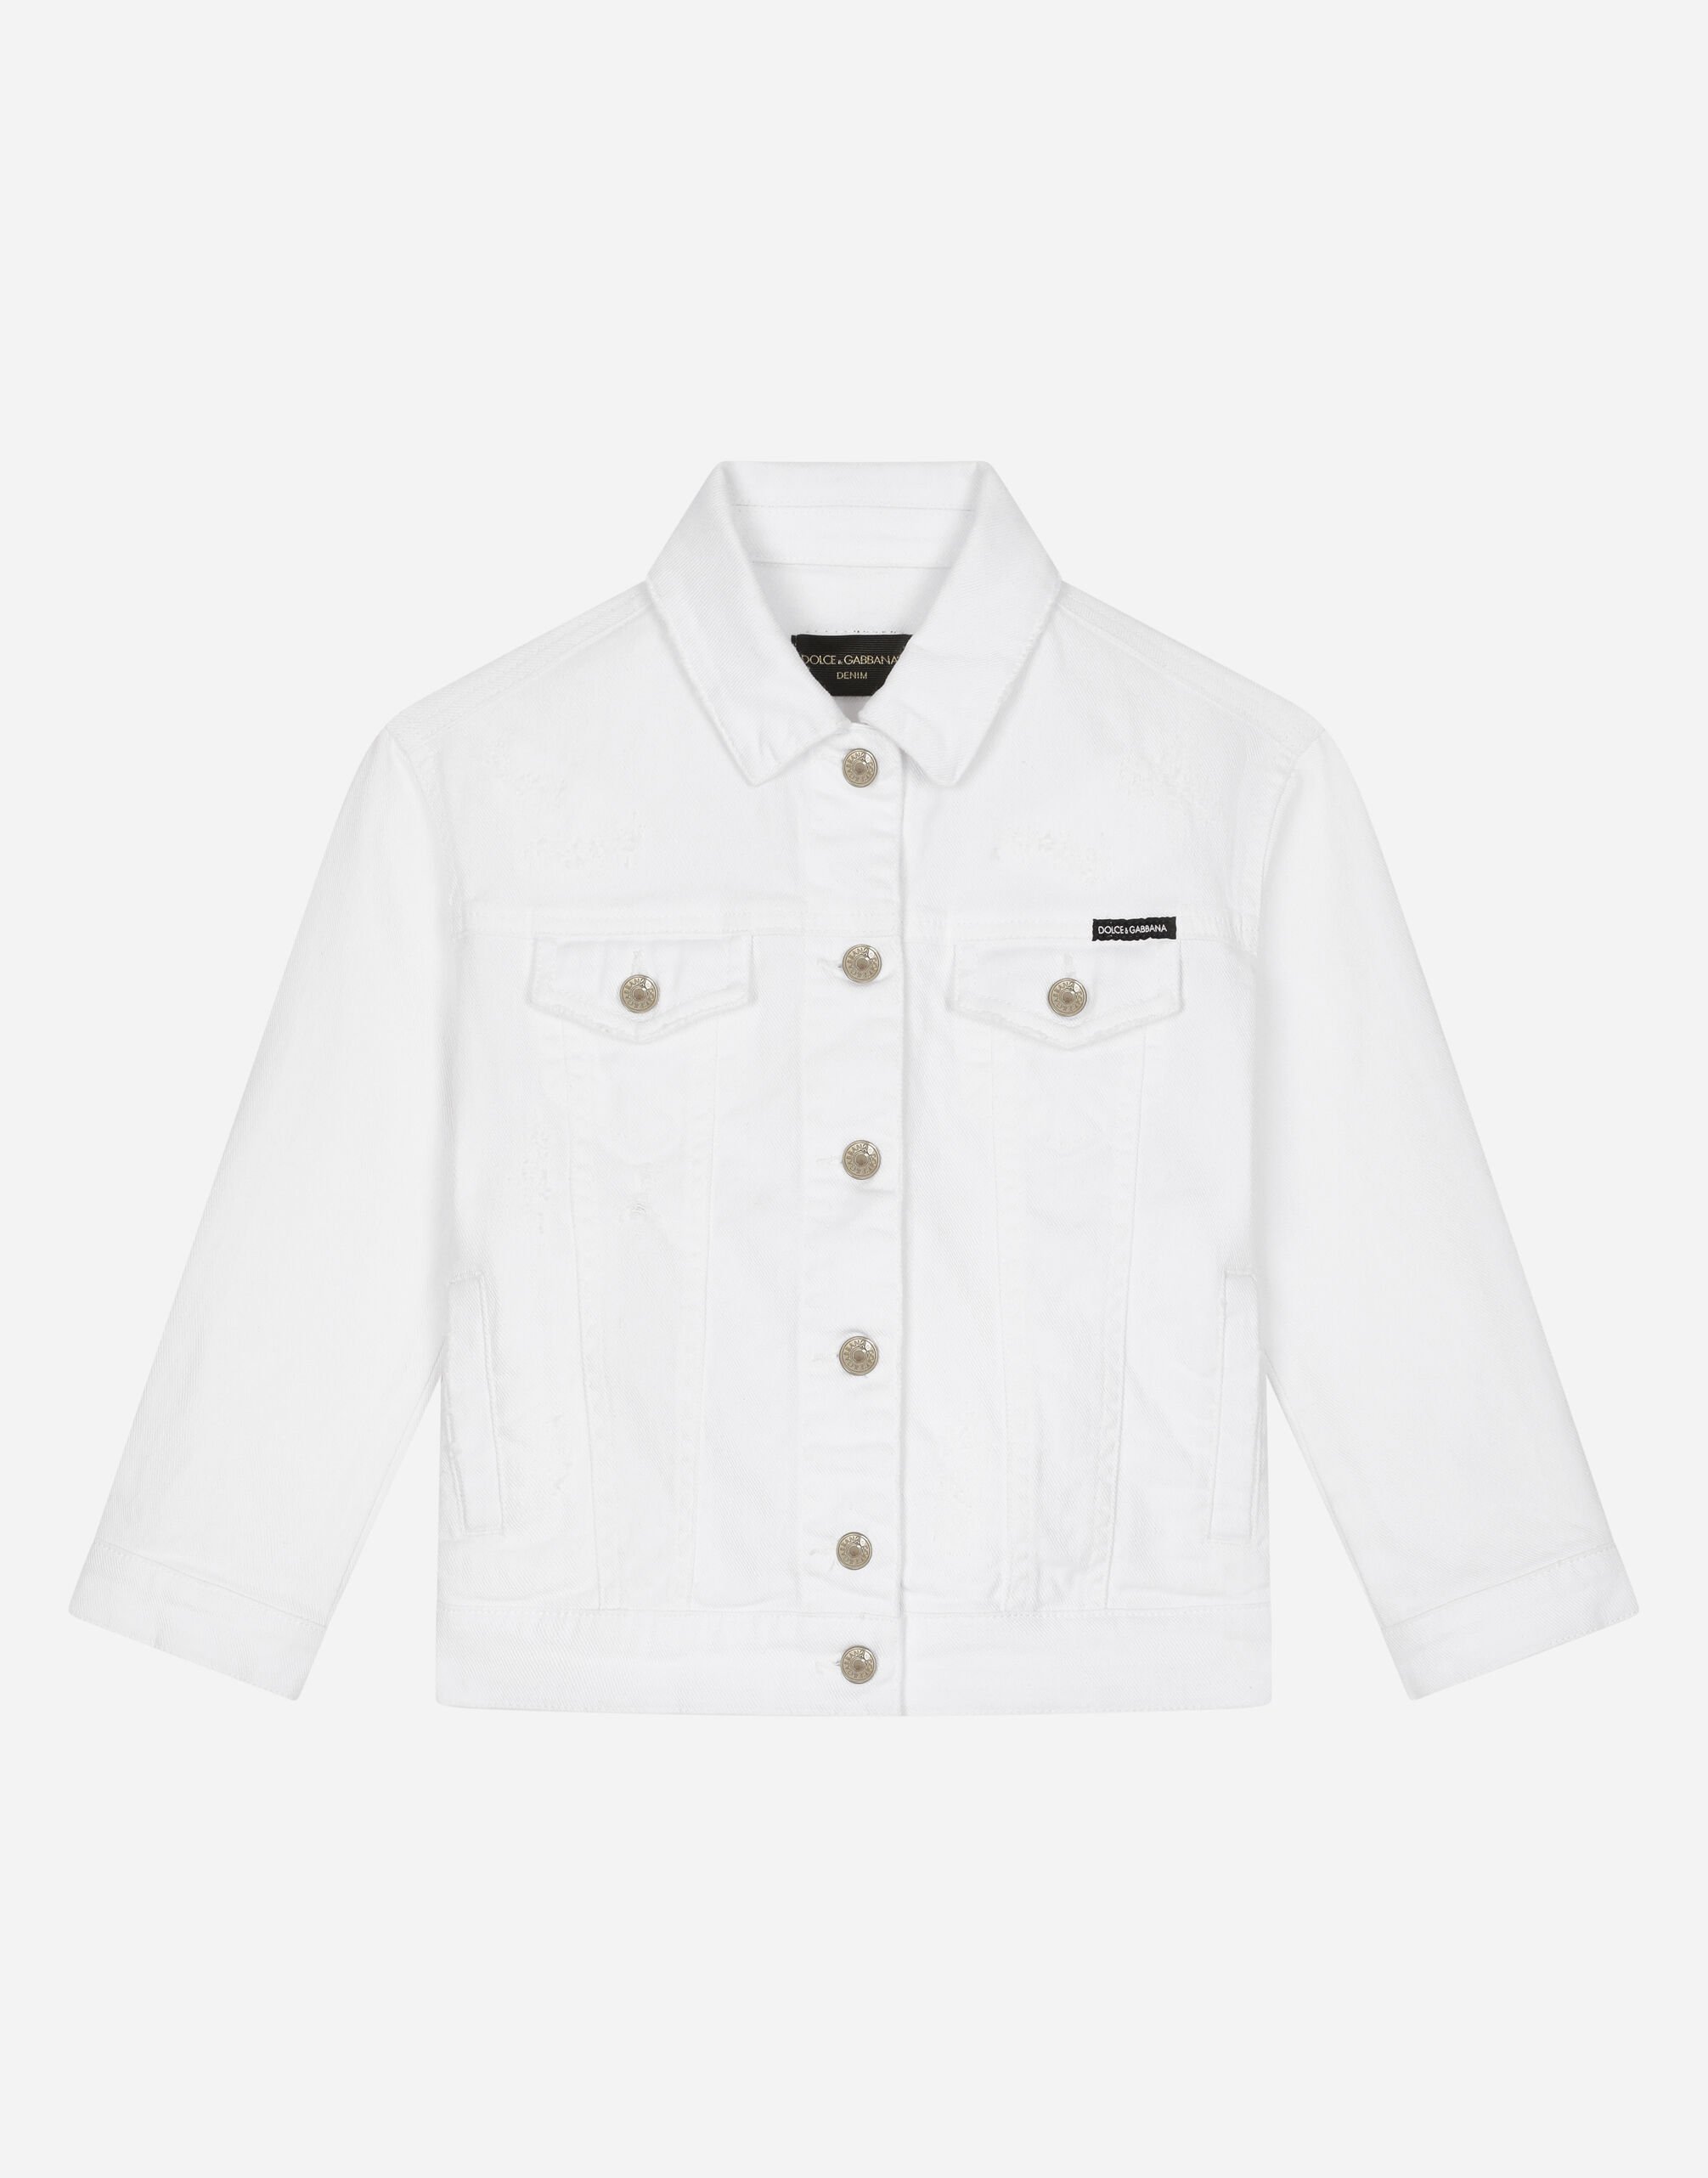 Dolce & Gabbana Jacke aus weißem Stretchdenim Drucken L5JC13ISMGV